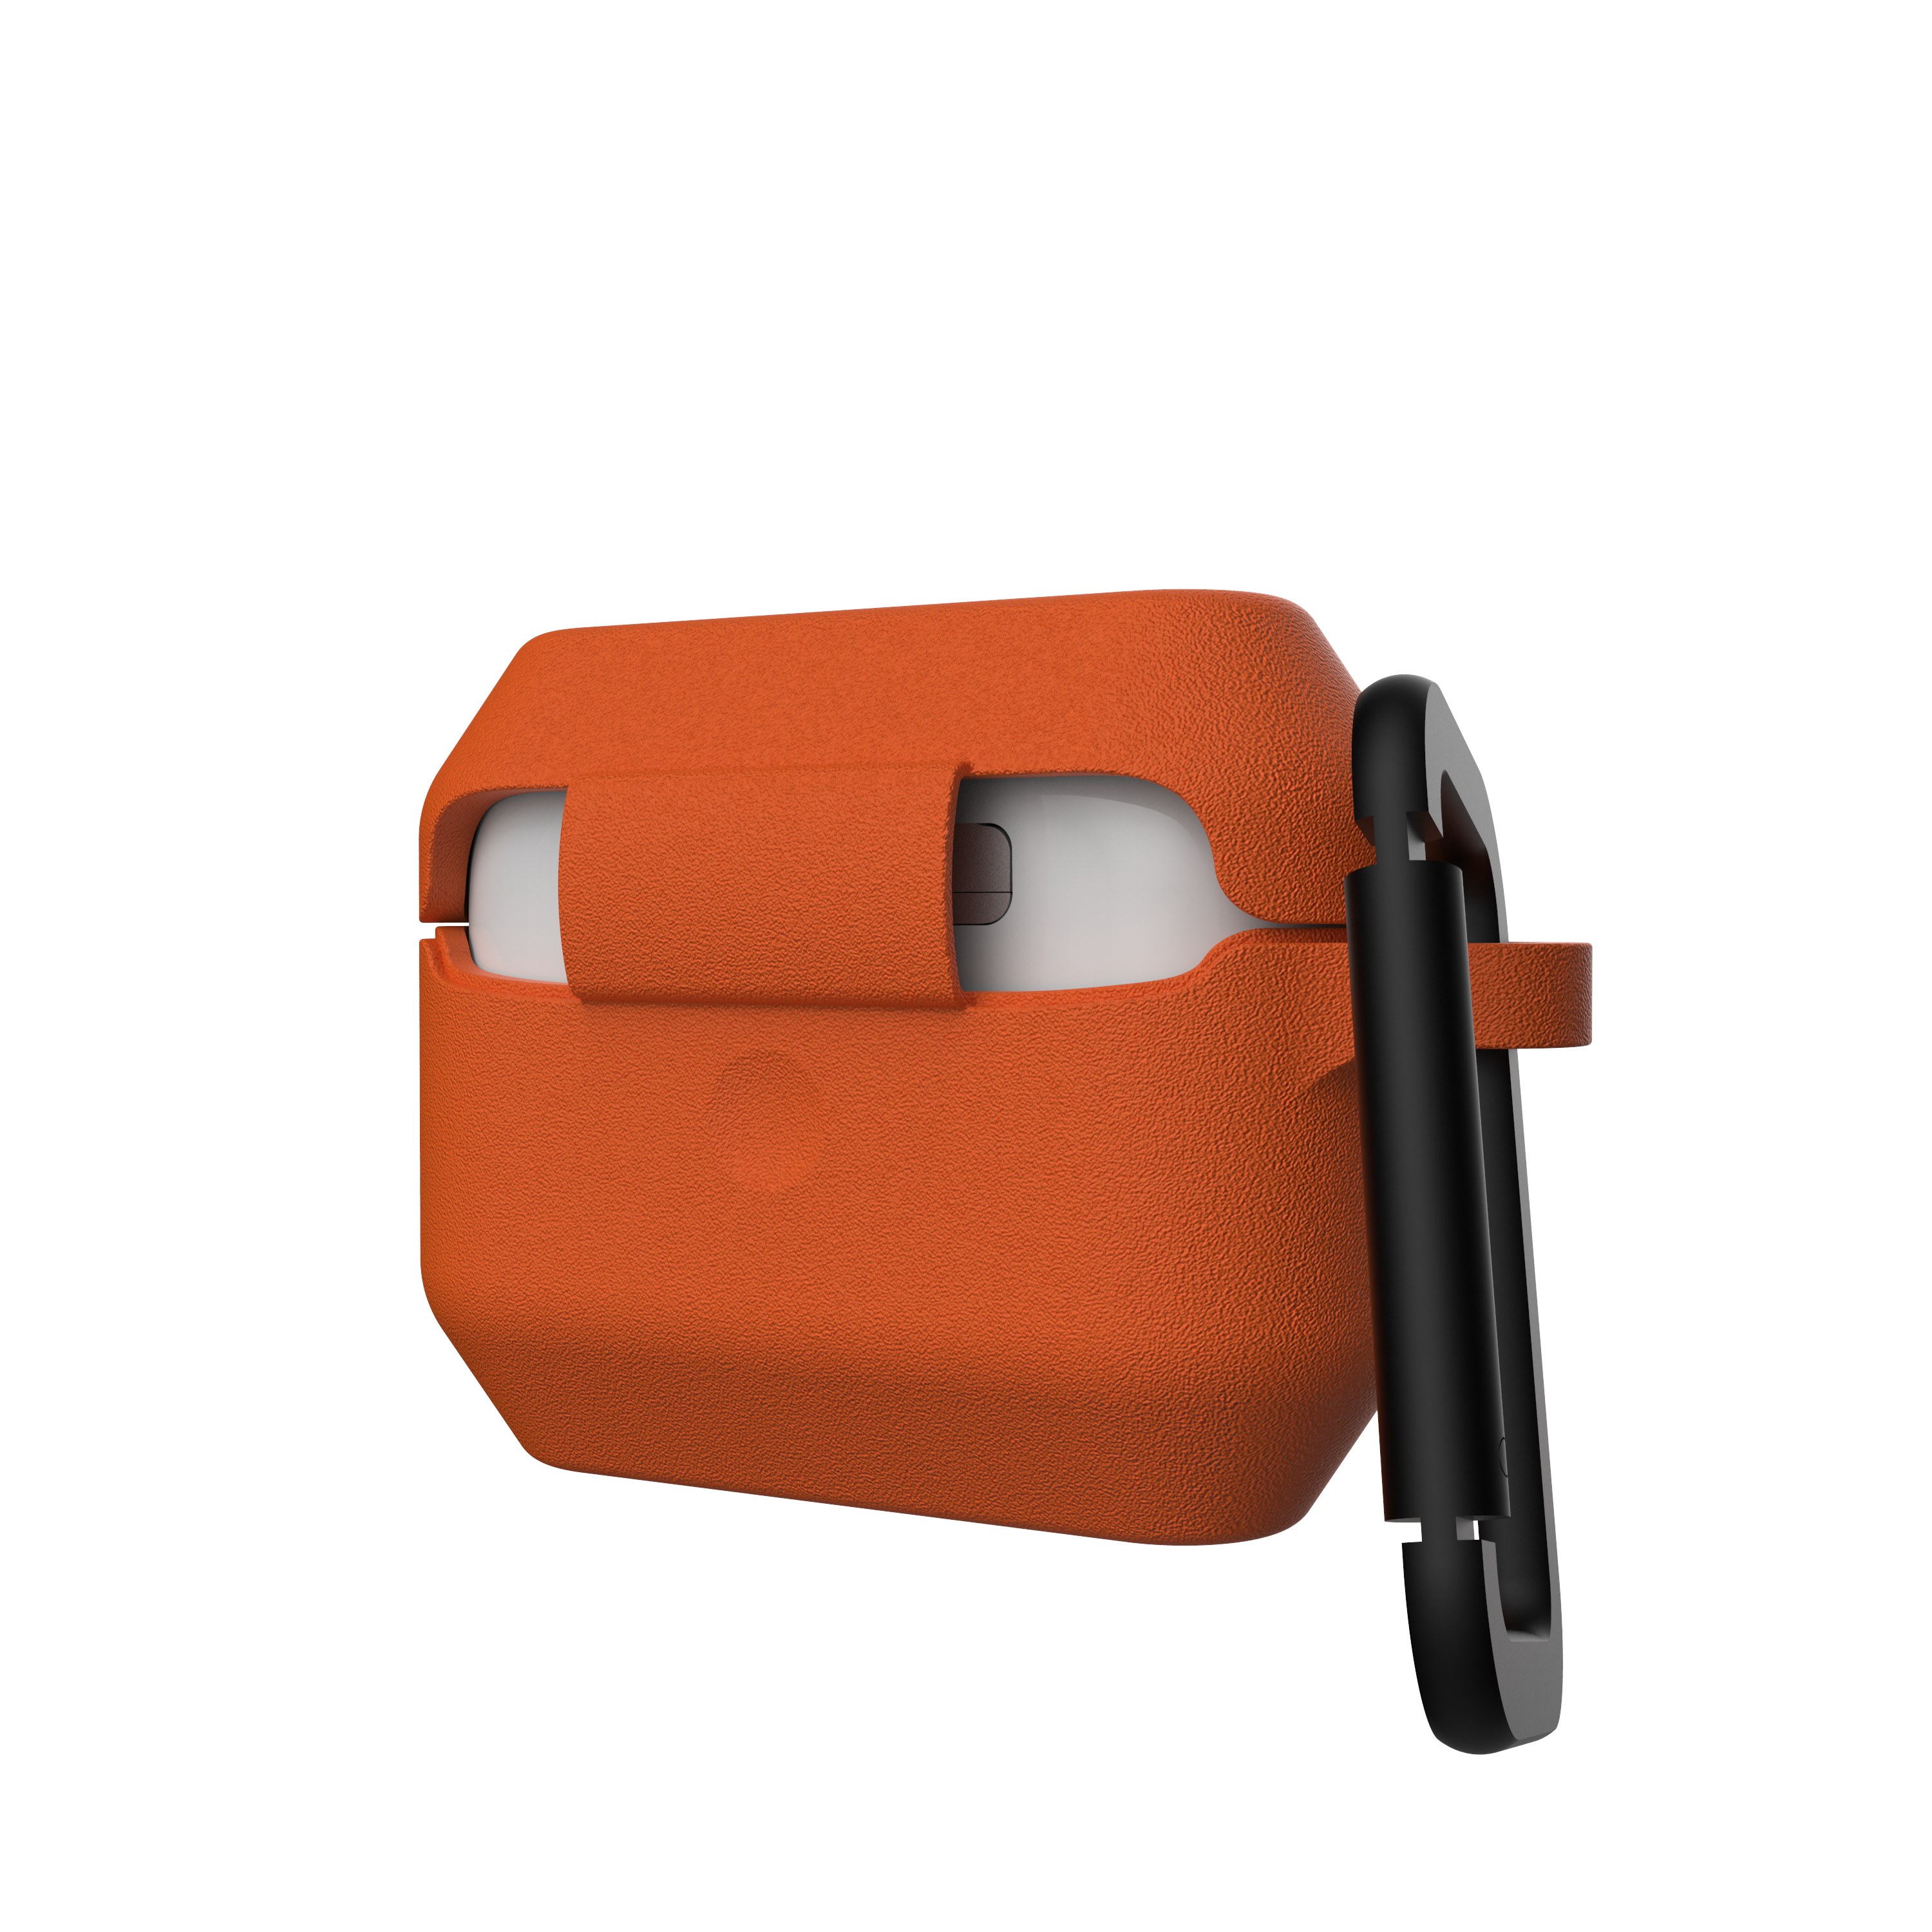  URBAN ARMOR GEAR UAG - Funda de silicona compatible con AirPods  (1ª generación y 2ª generación), de cuerpo completo, resistente al agua,  suave al tacto, con mosquetón desmontable, naranja/gris oscuro 